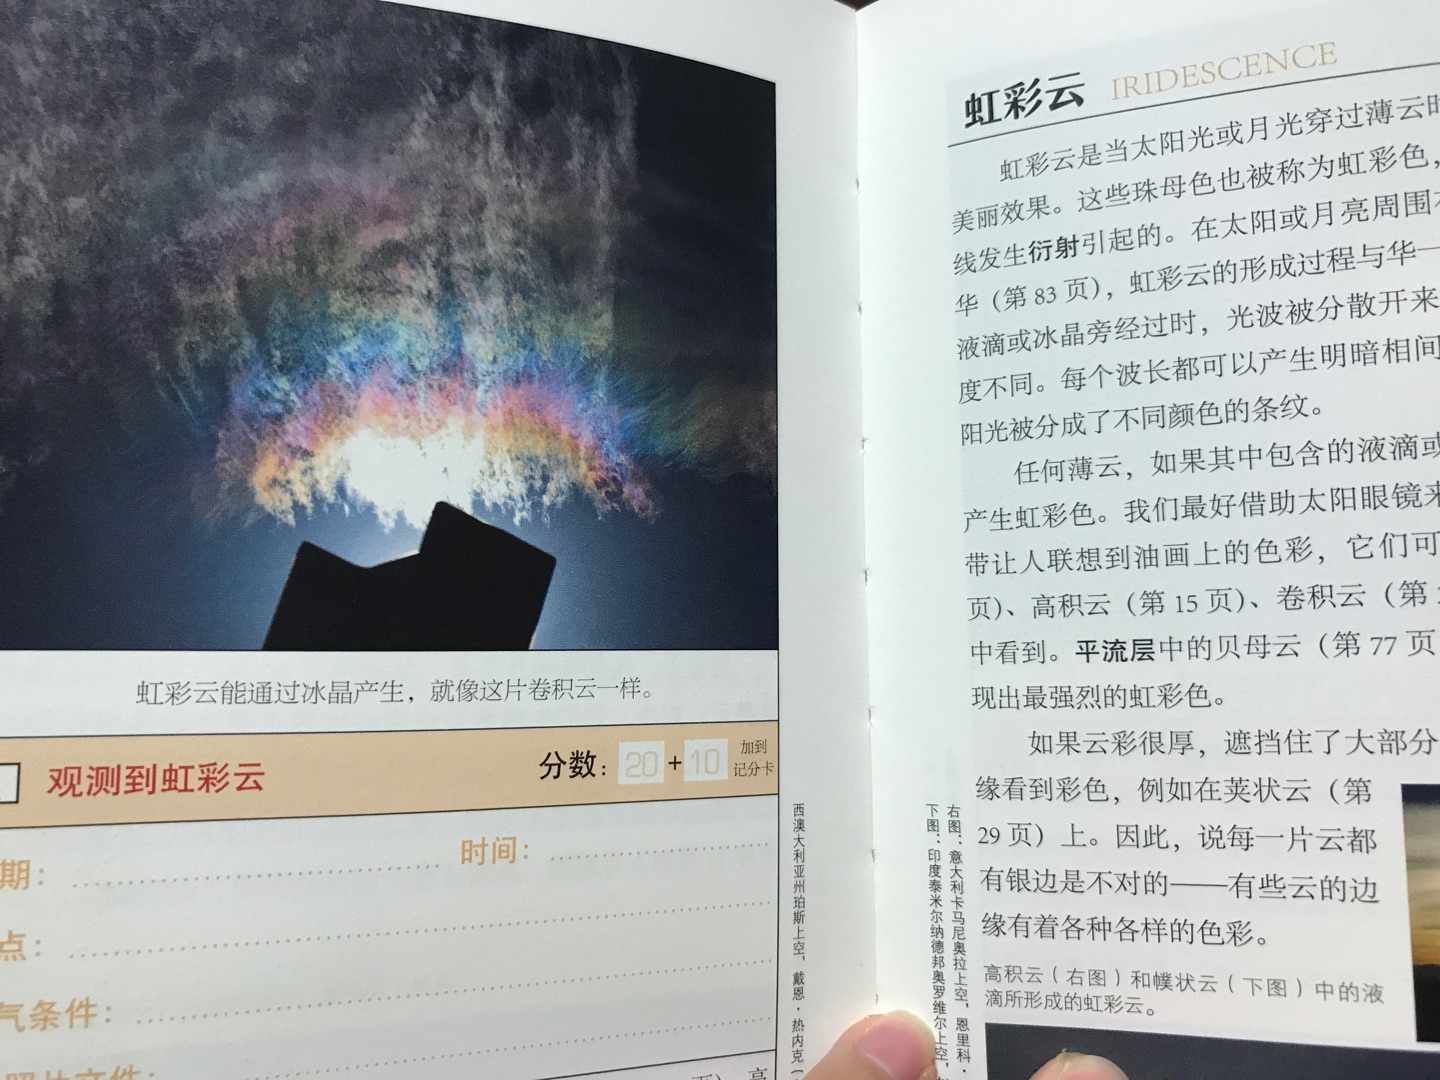 最近武汉的天空非常美，让我很想买这本书，因为天空的美，云知道，我也想知道?